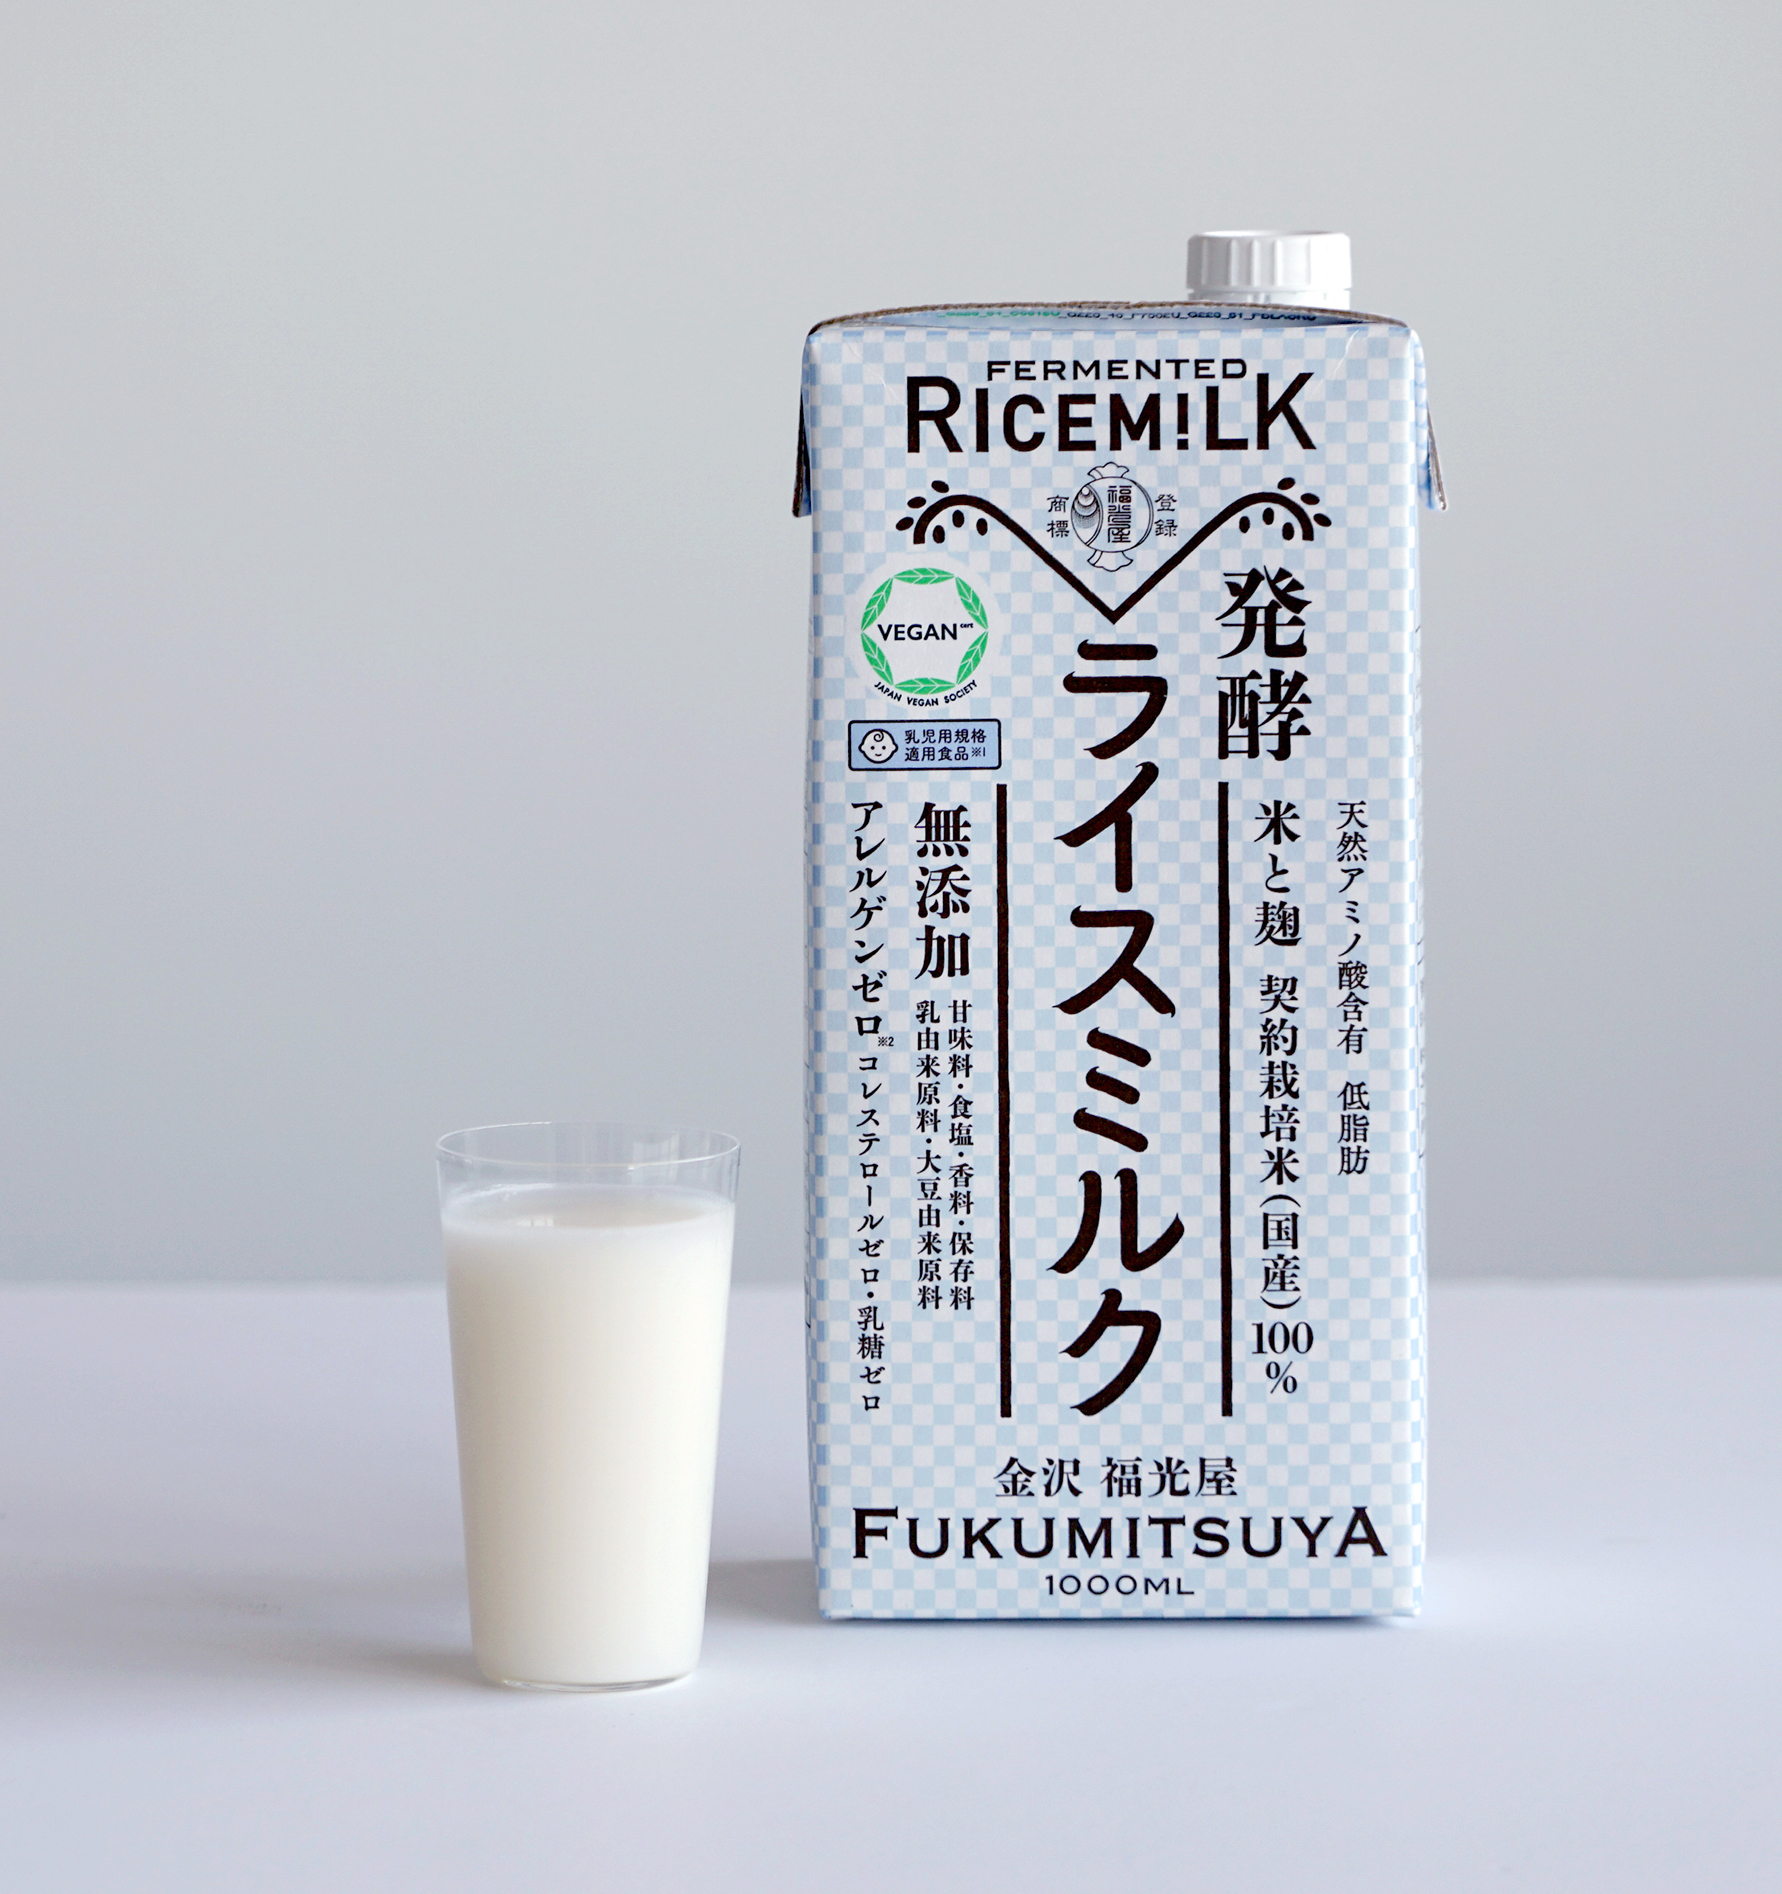 発酵ライスミルク 10月29日 金 リニューアル新発売 株式会社福光屋のプレスリリース